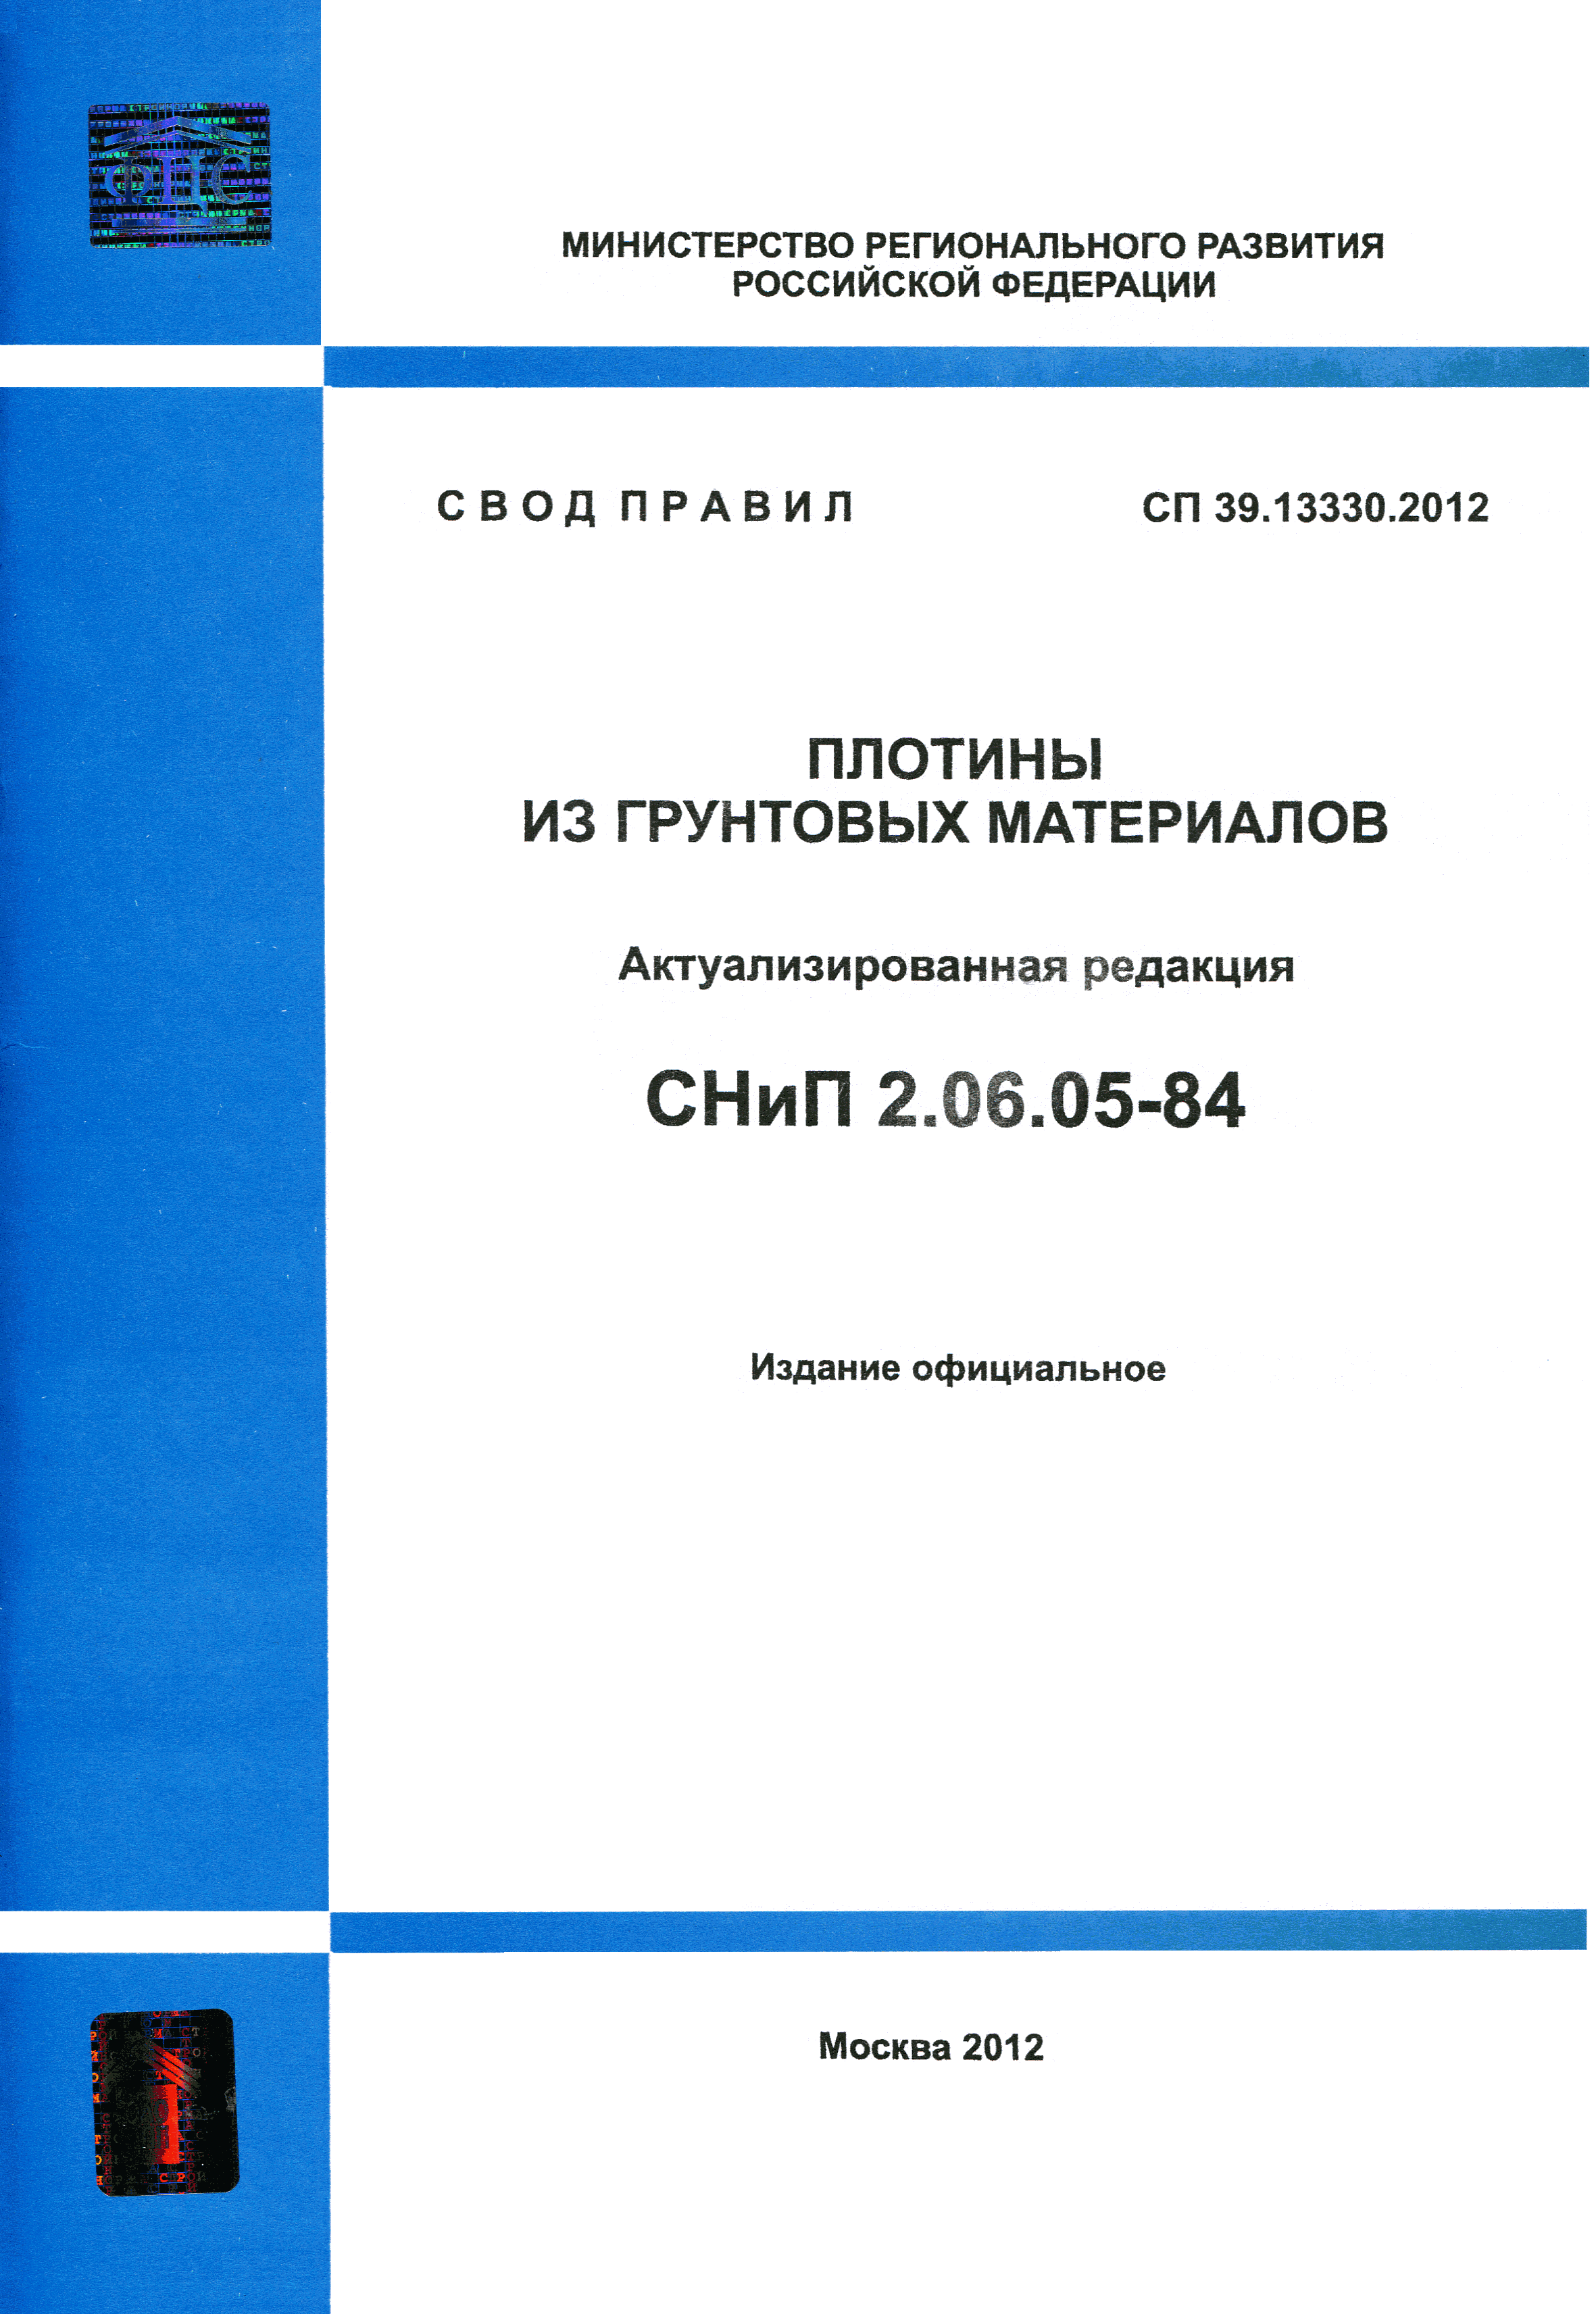 СП 39.13330.2012